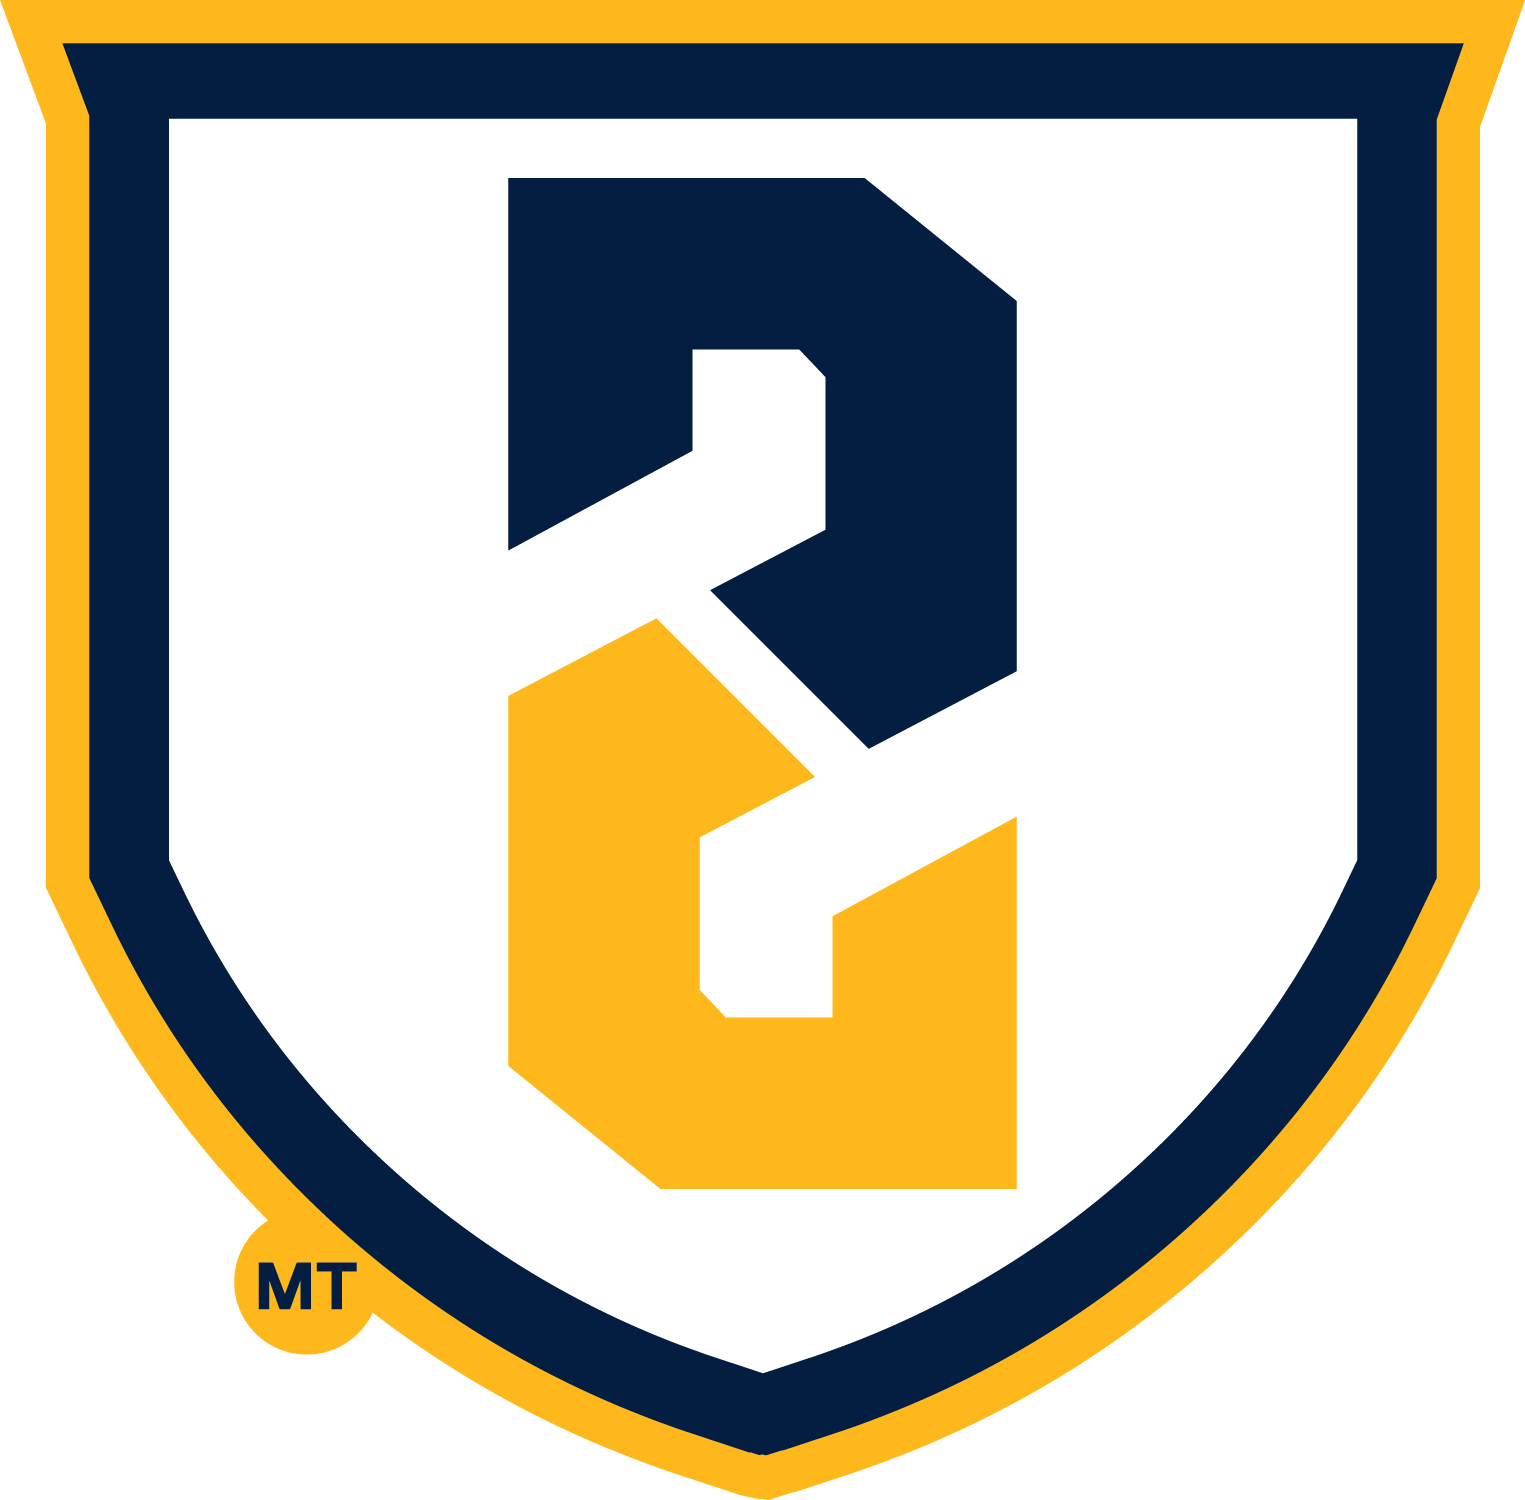 S Monogram in Shield logo